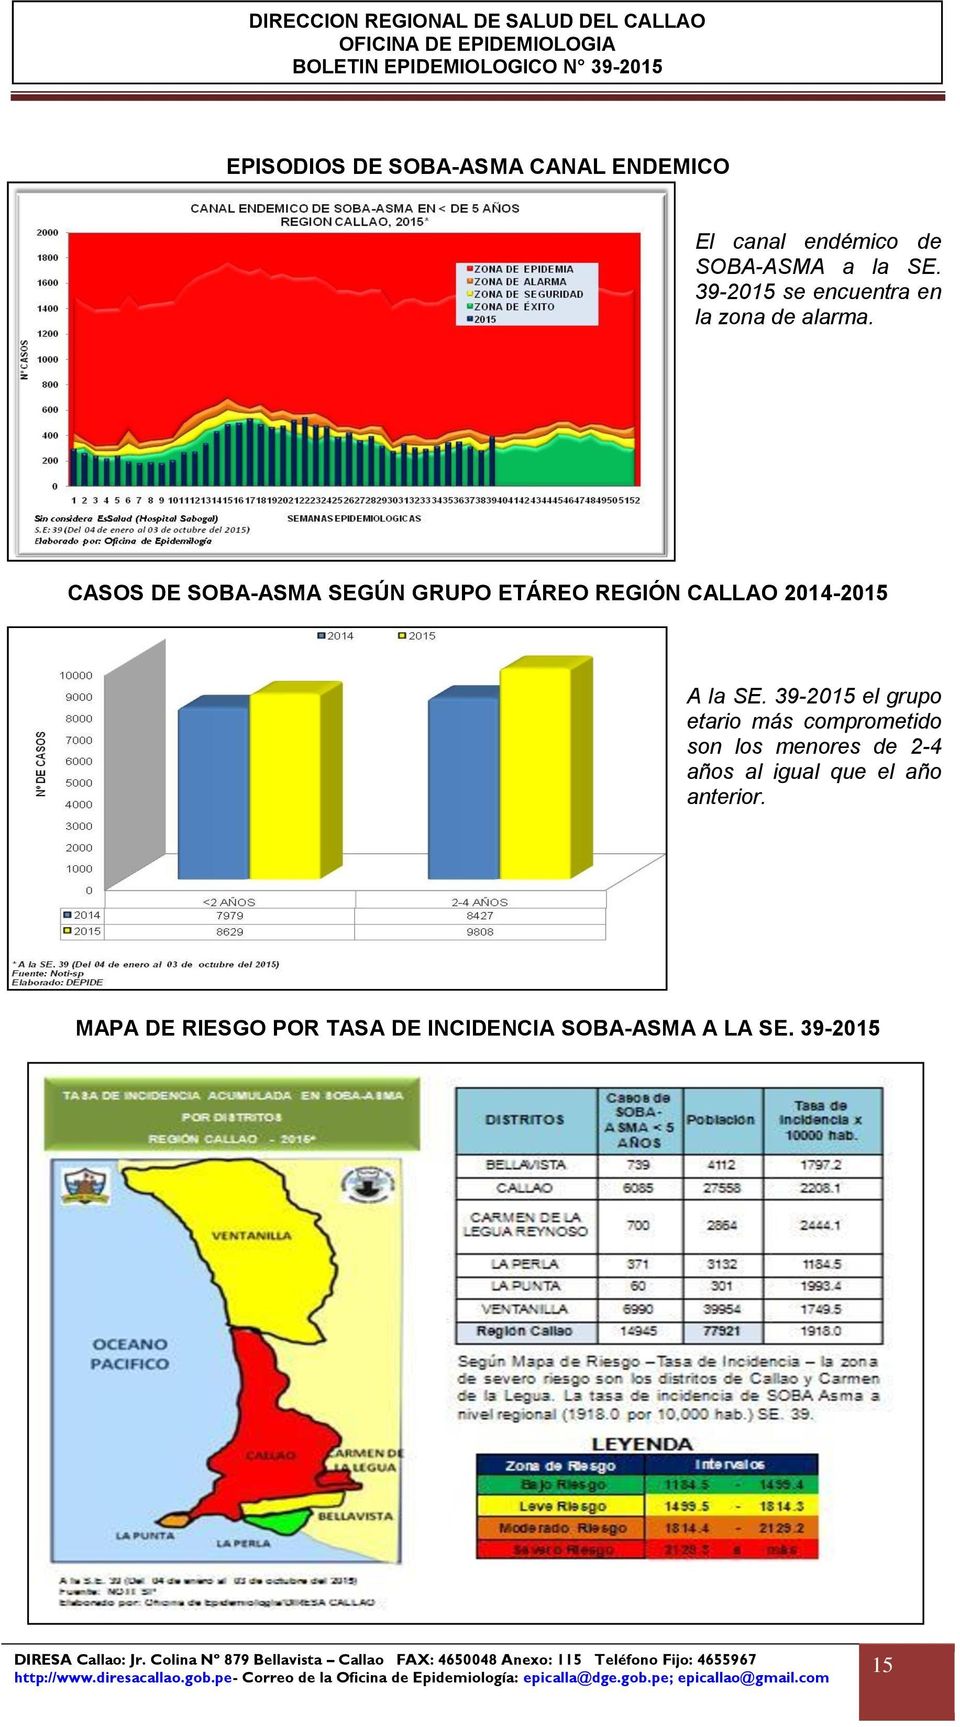 CASOS DE SOBA-ASMA SEGÚN GRUPO ETÁREO REGIÓN CALLAO 2014-2015 A la SE.